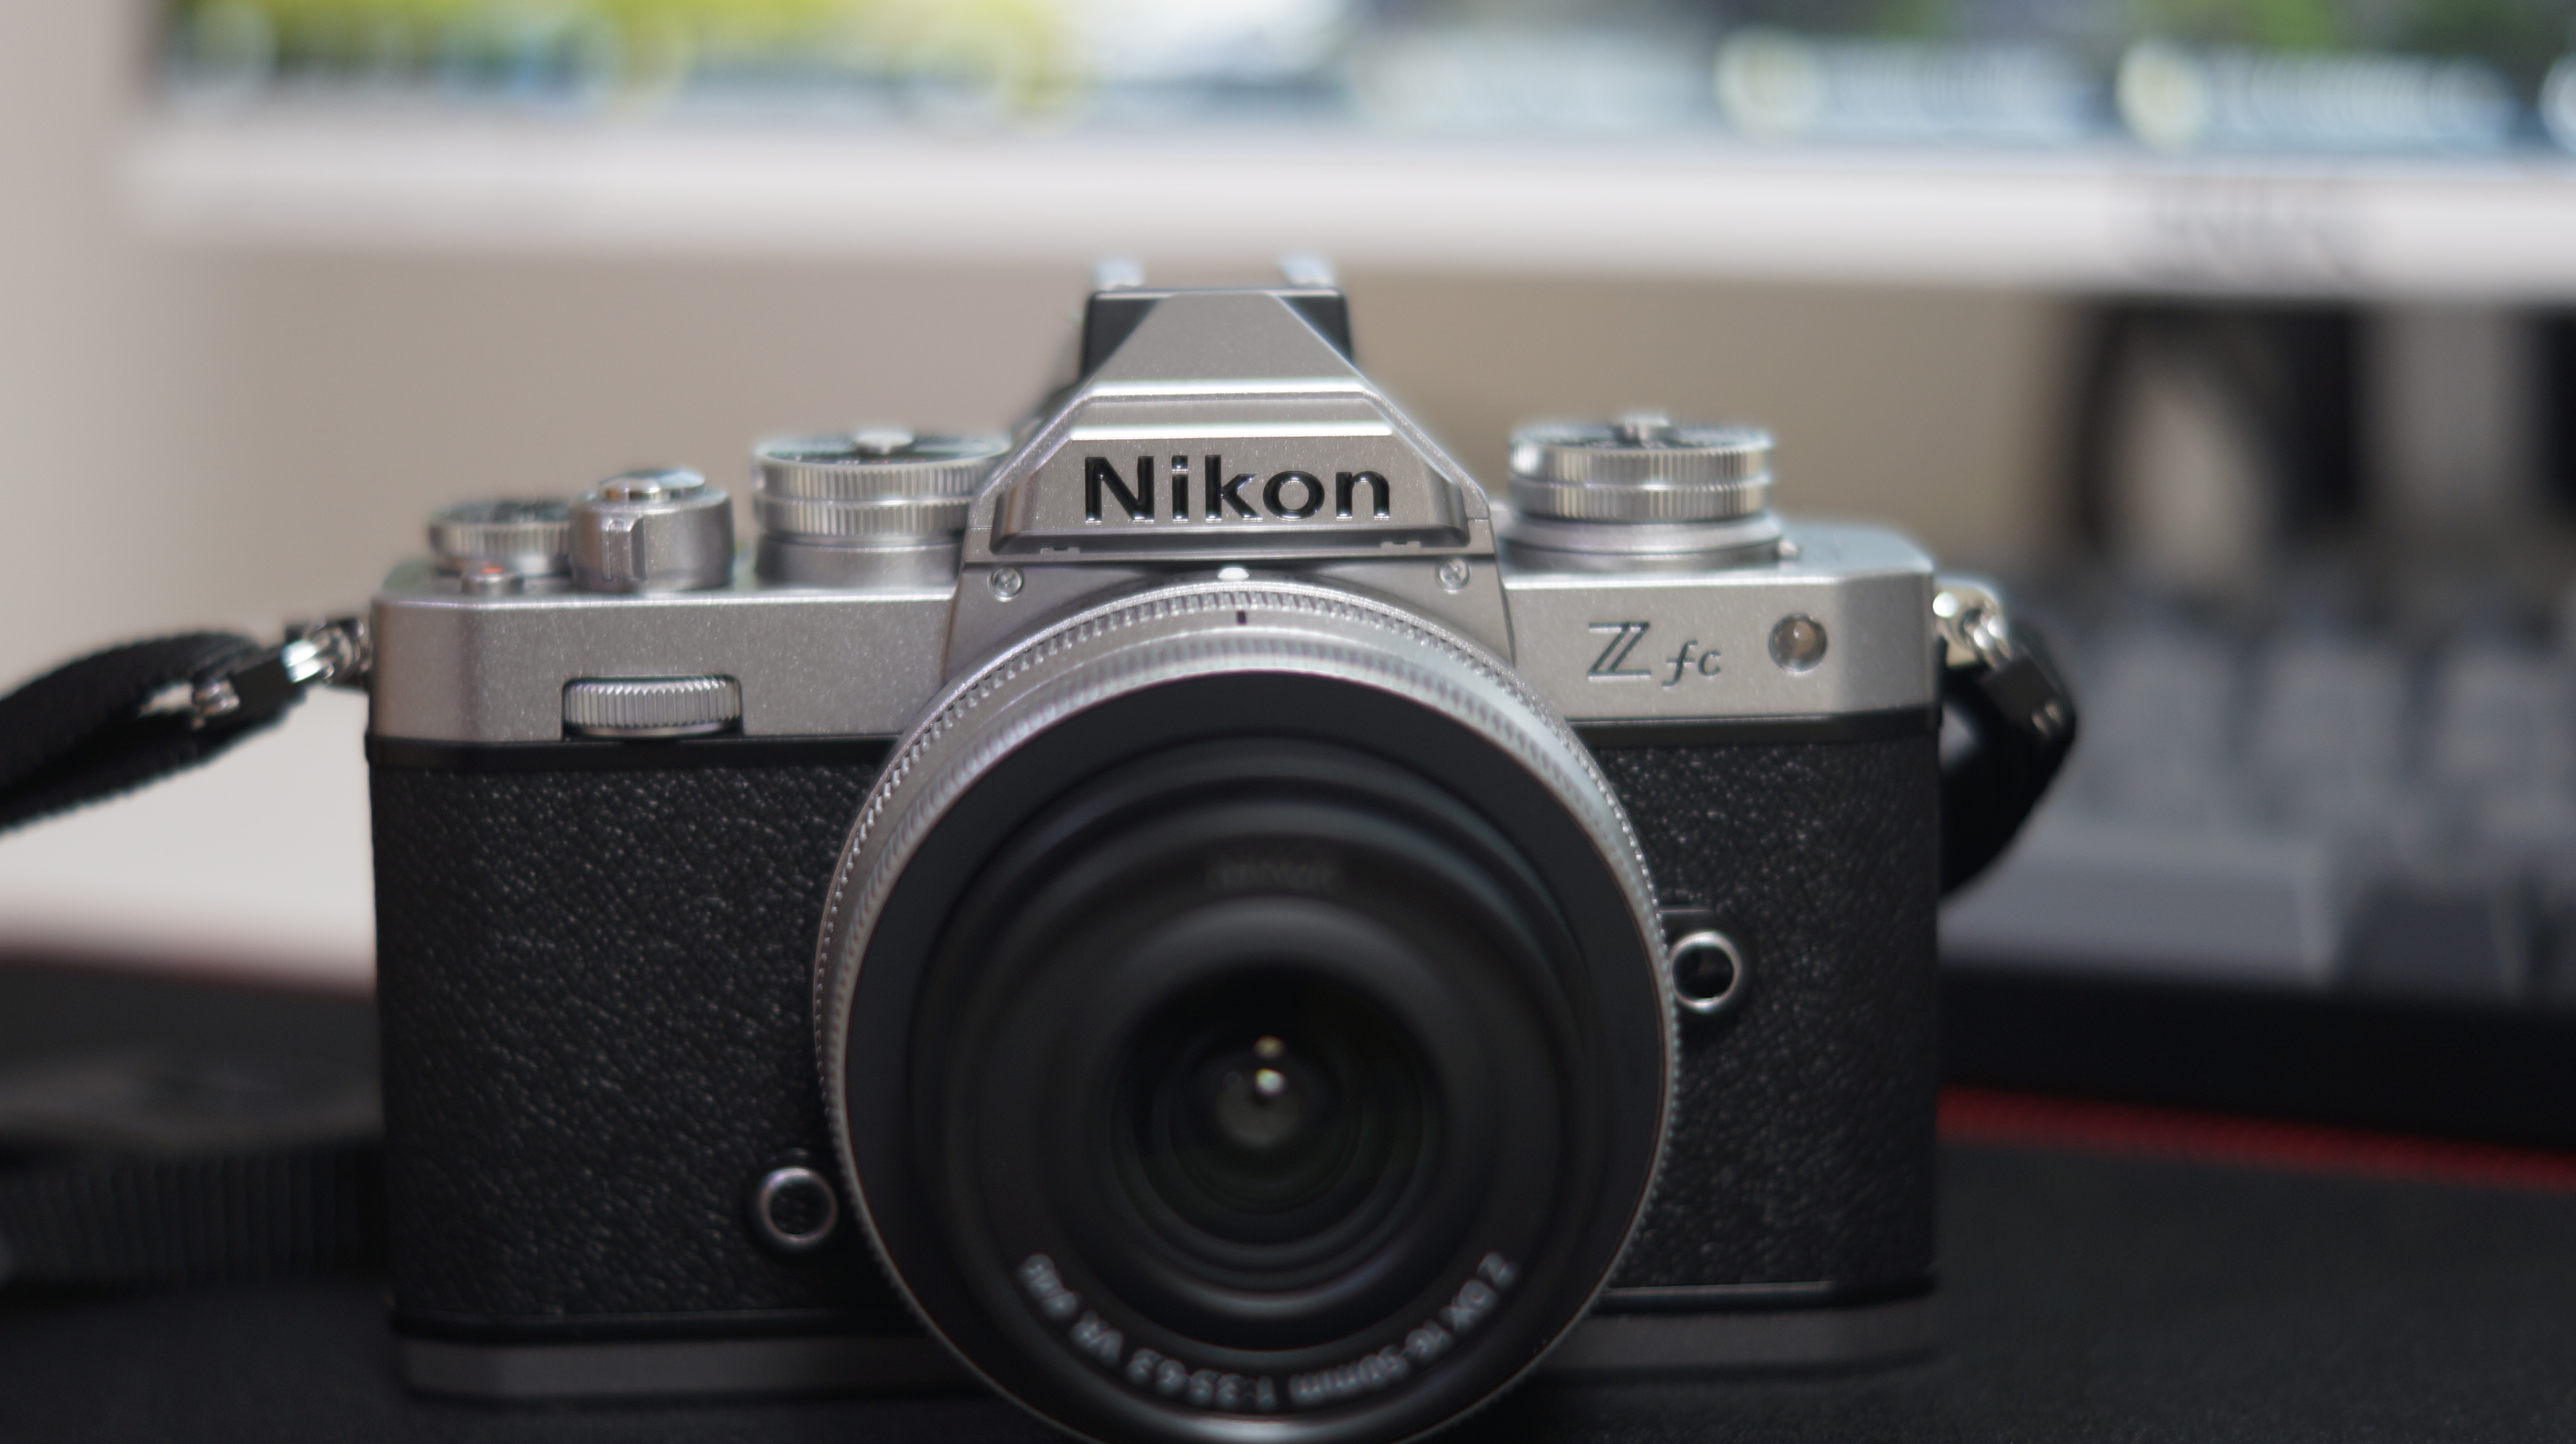 니콘 Zfc 레트로 디자인의 미러리스 디지털카메라 개봉기 사진19